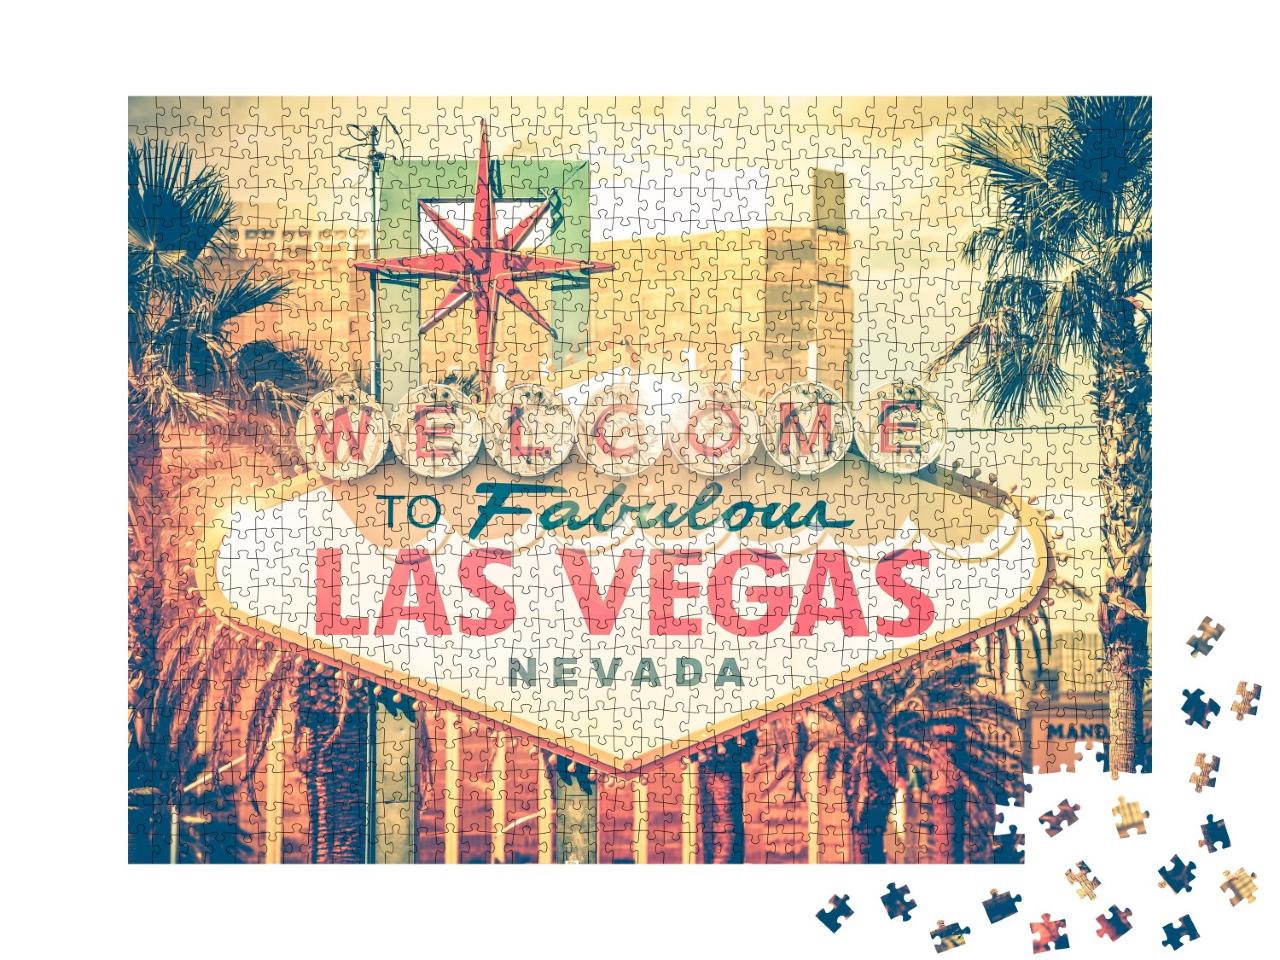 Puzzle de 1000 pièces « Bienvenue à la fabuleuse Las Vegas »